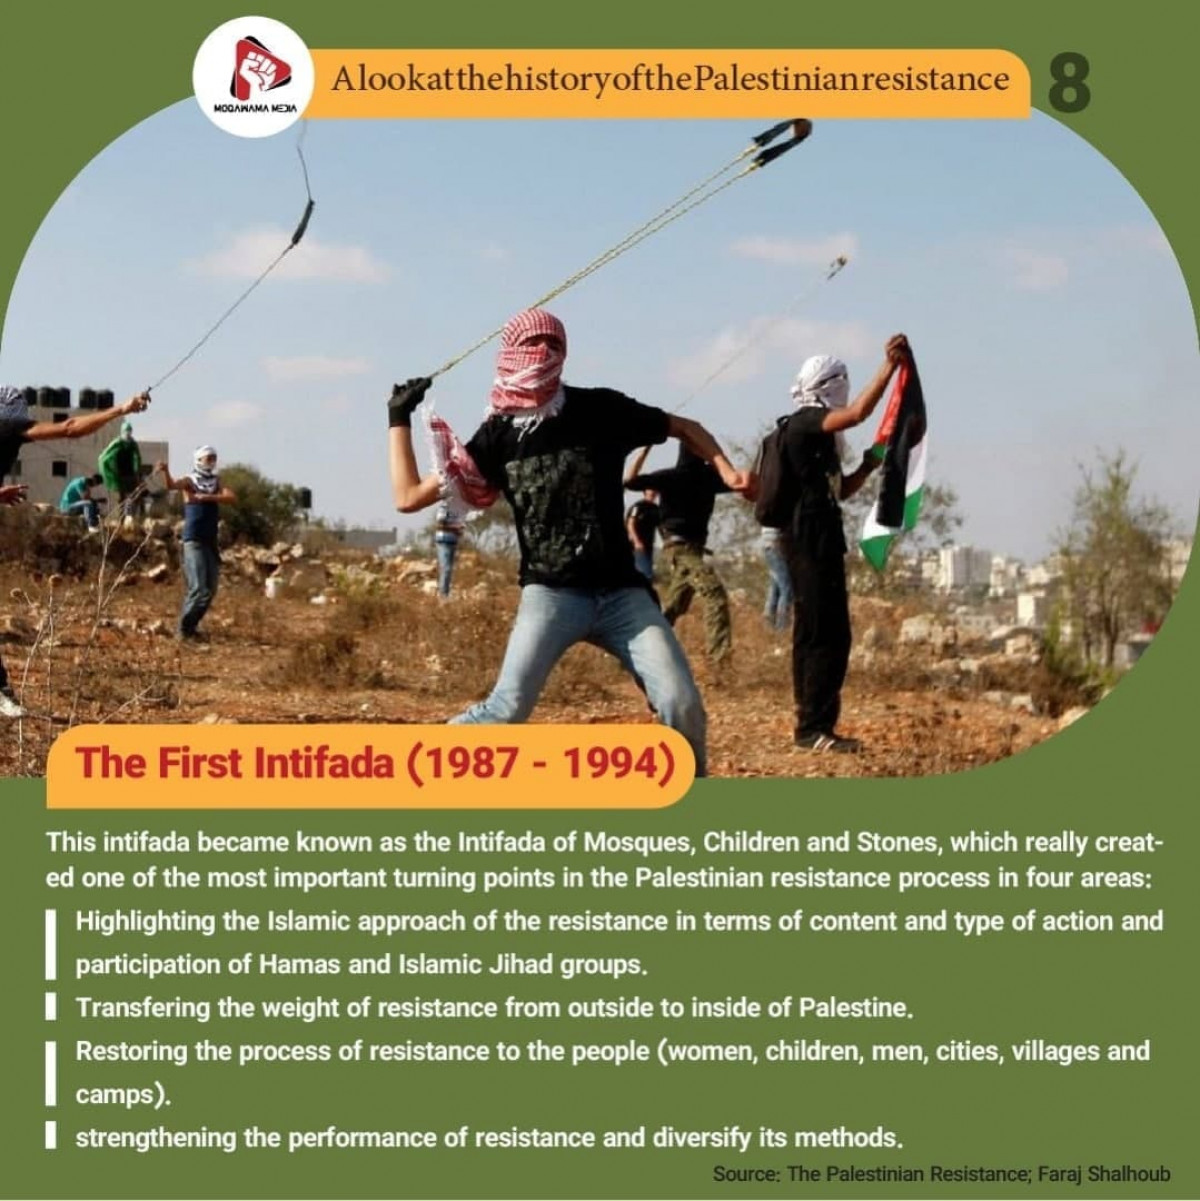 The First Intifada 1987 - 1994